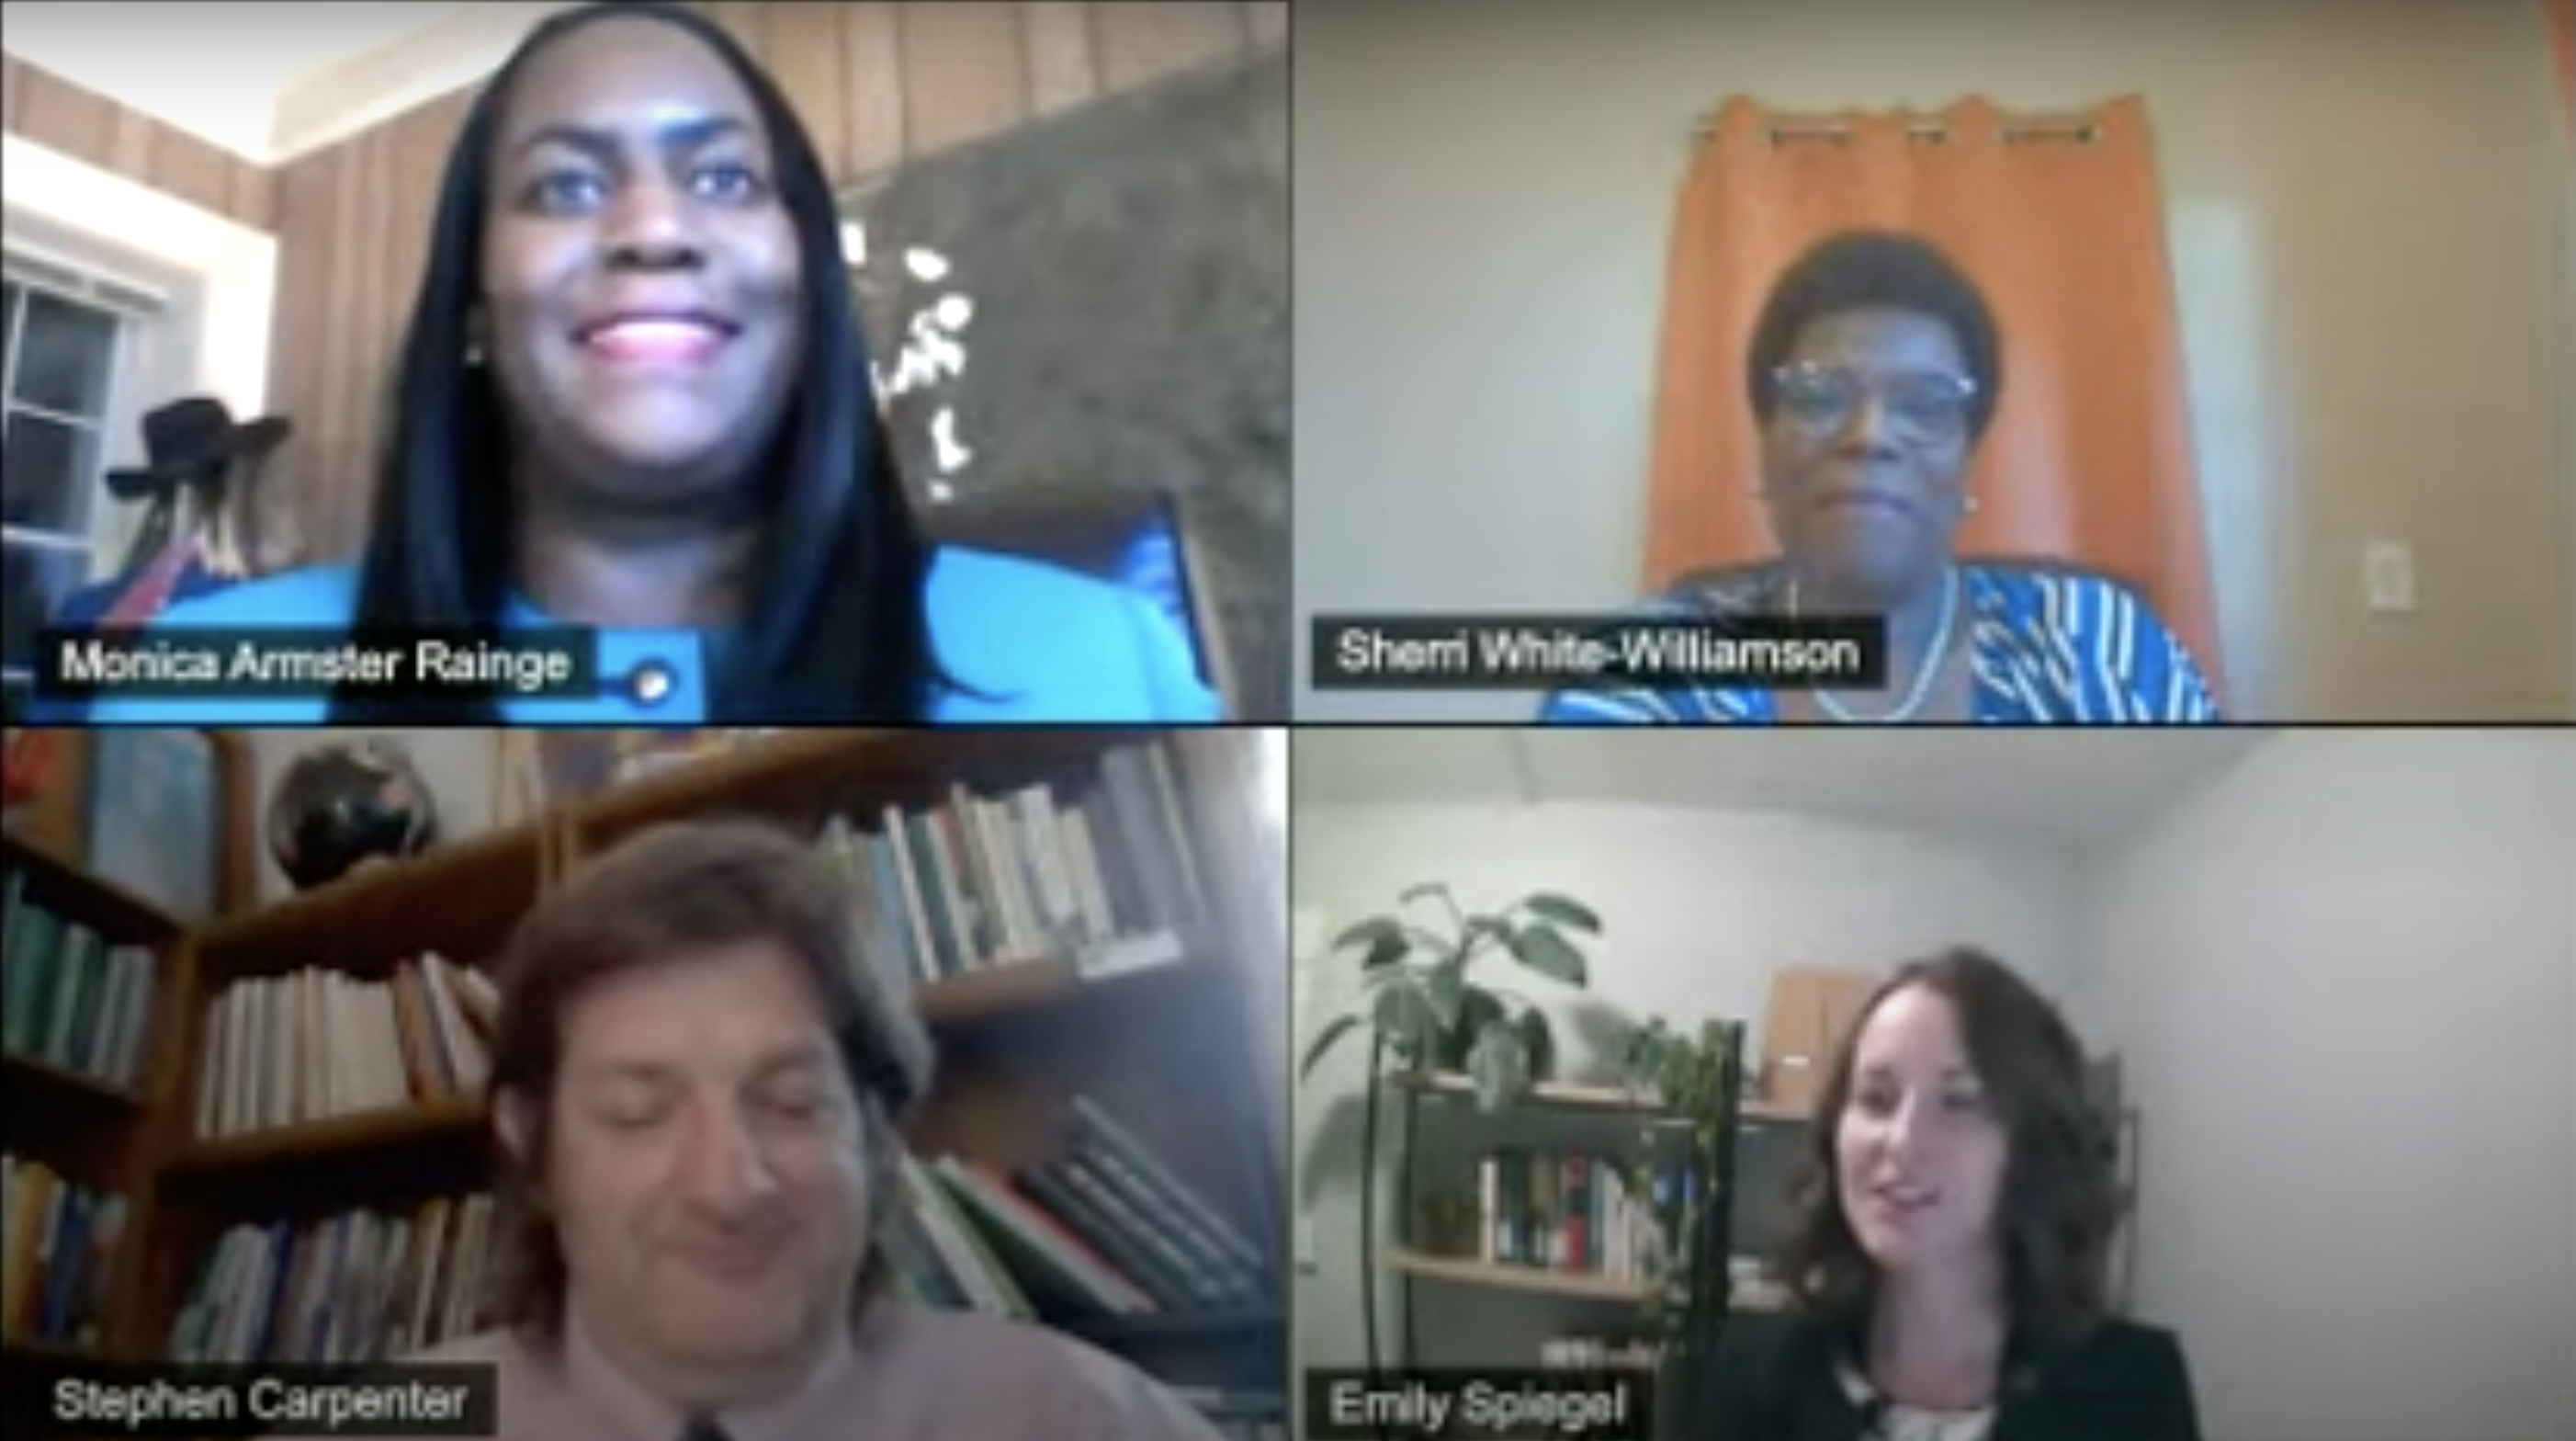 Monica Armster Rainge, Sherri White-Williamson, Stephen Carpenter, and Emily Spiegel on webcams during the panel.